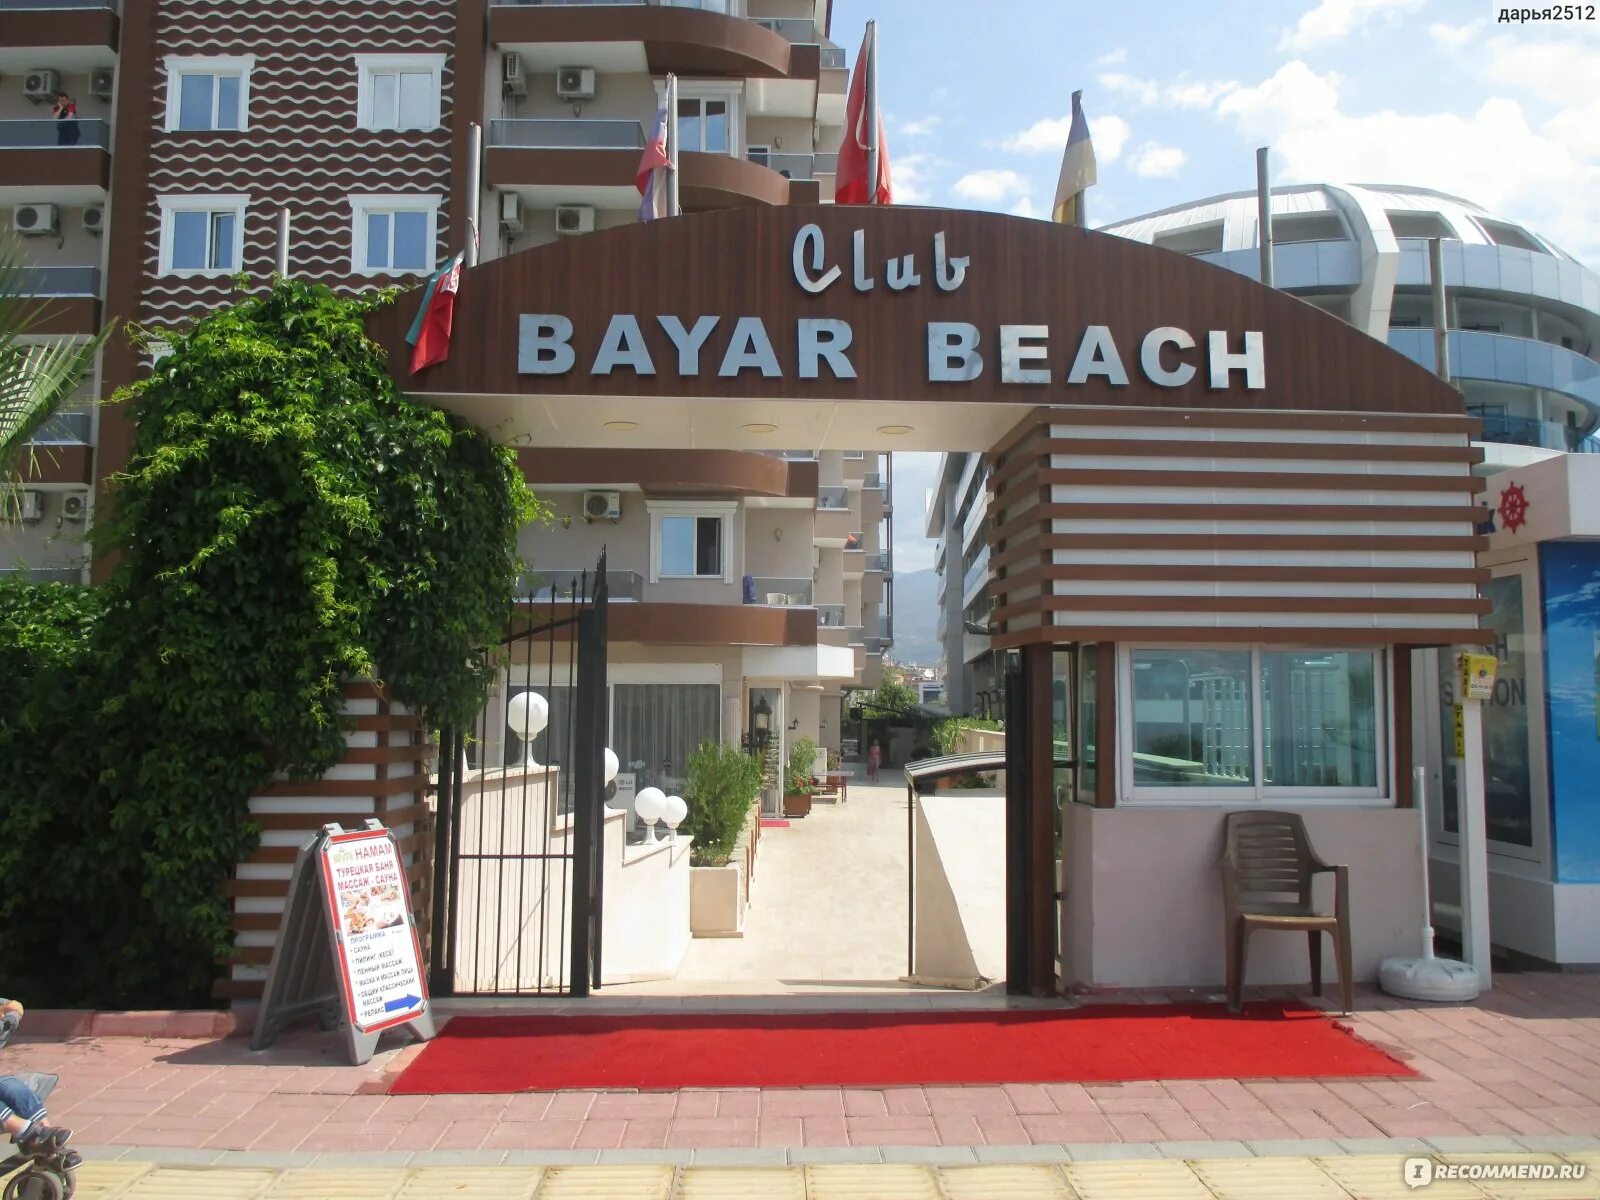 Клаб Баяр Бич Алания. Club Bayar Beach бар. Club Bayar Beach. Club Bayar Beach Hotel 4. Club bayar beach 4